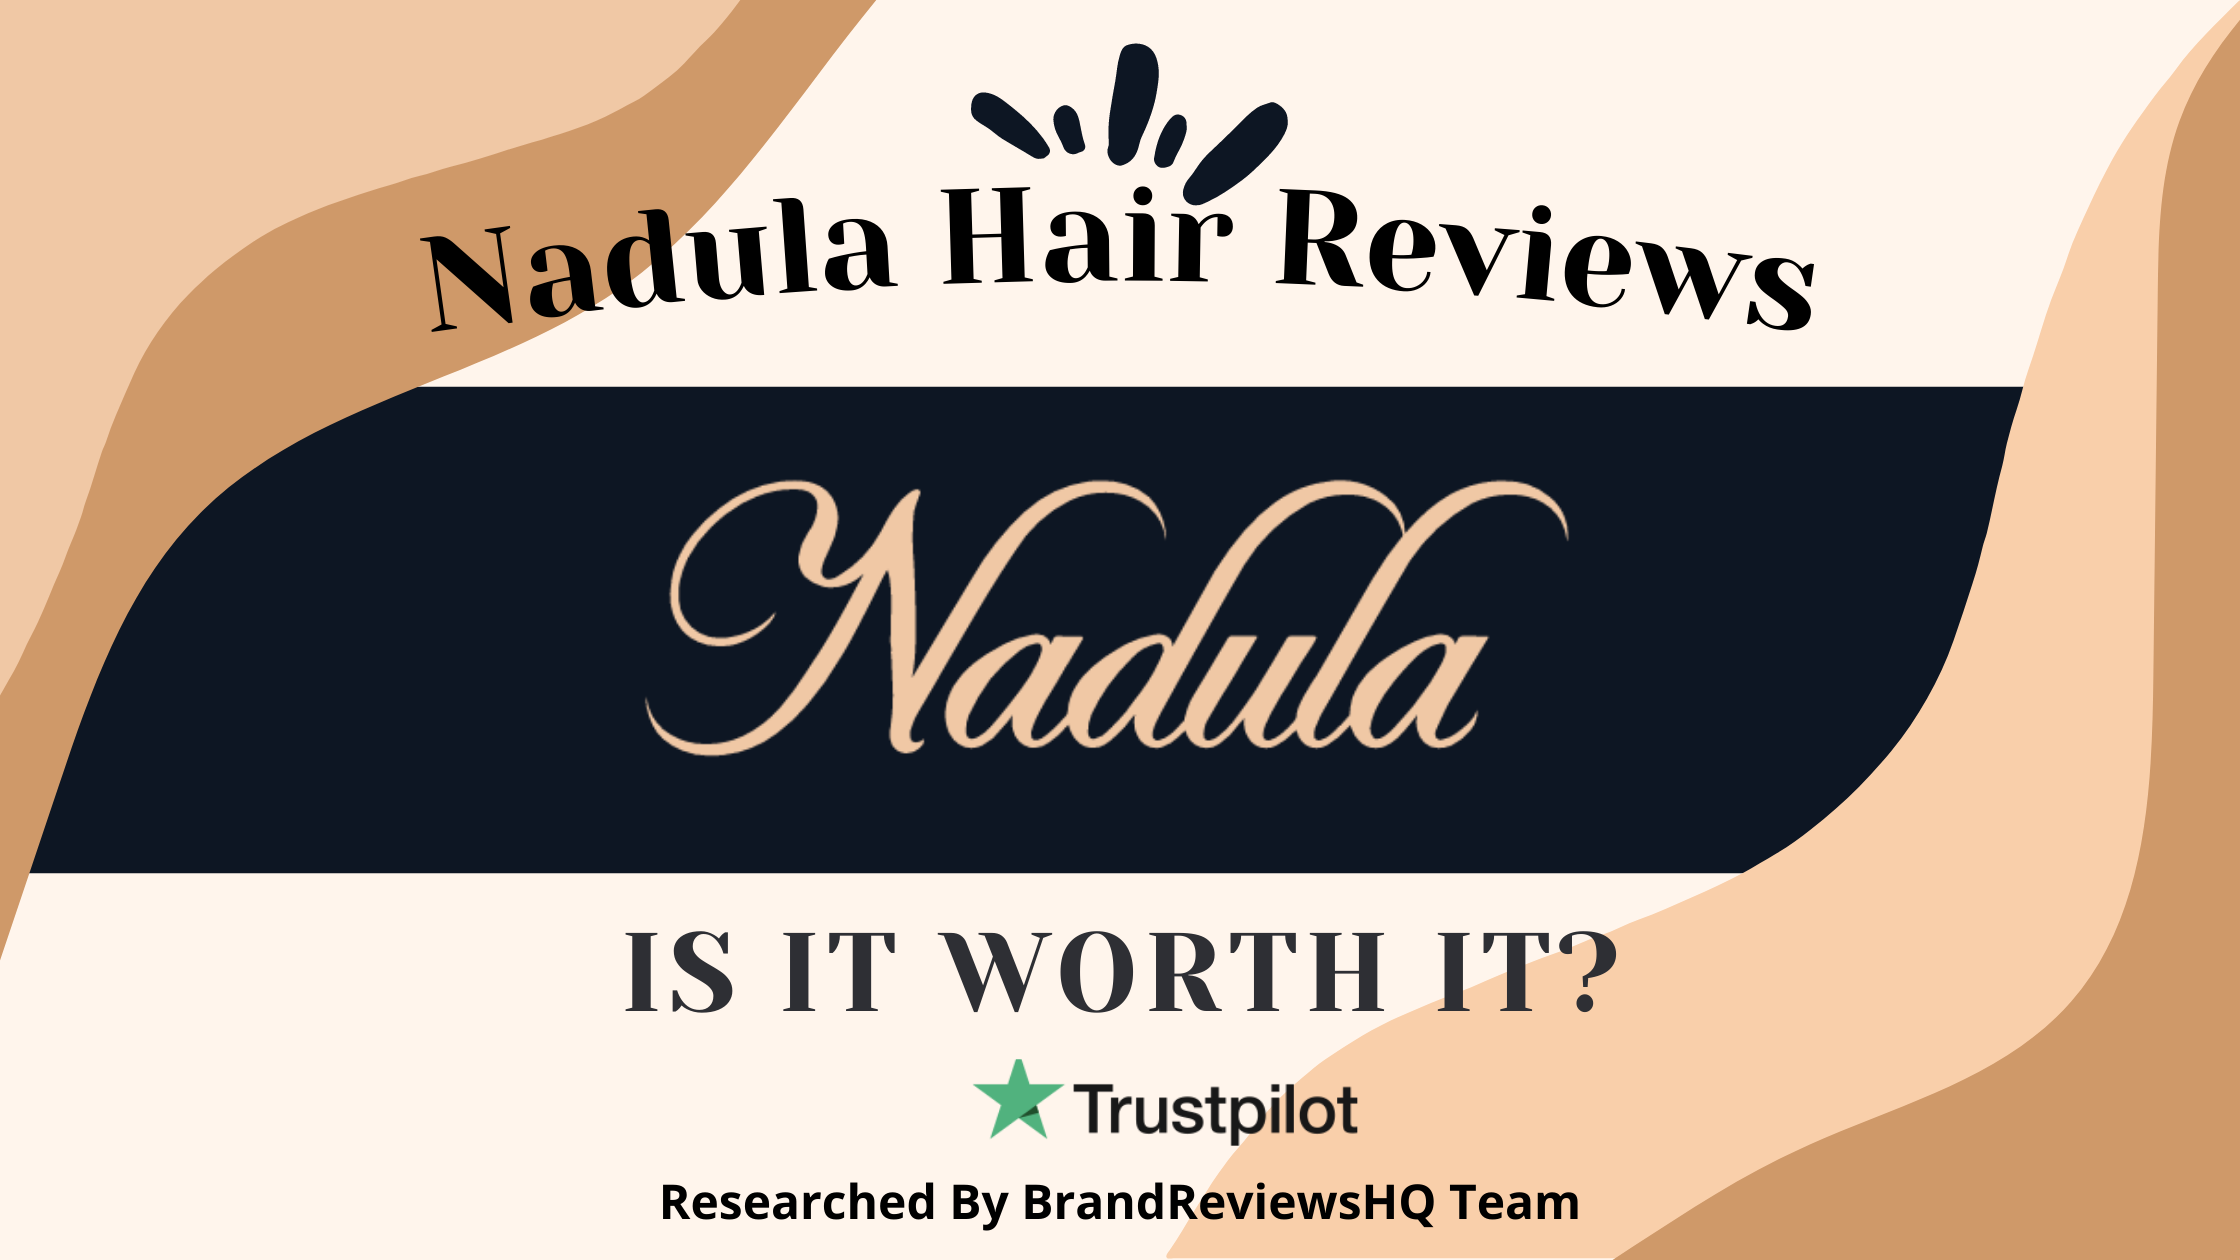 Nadula Hair Reviews